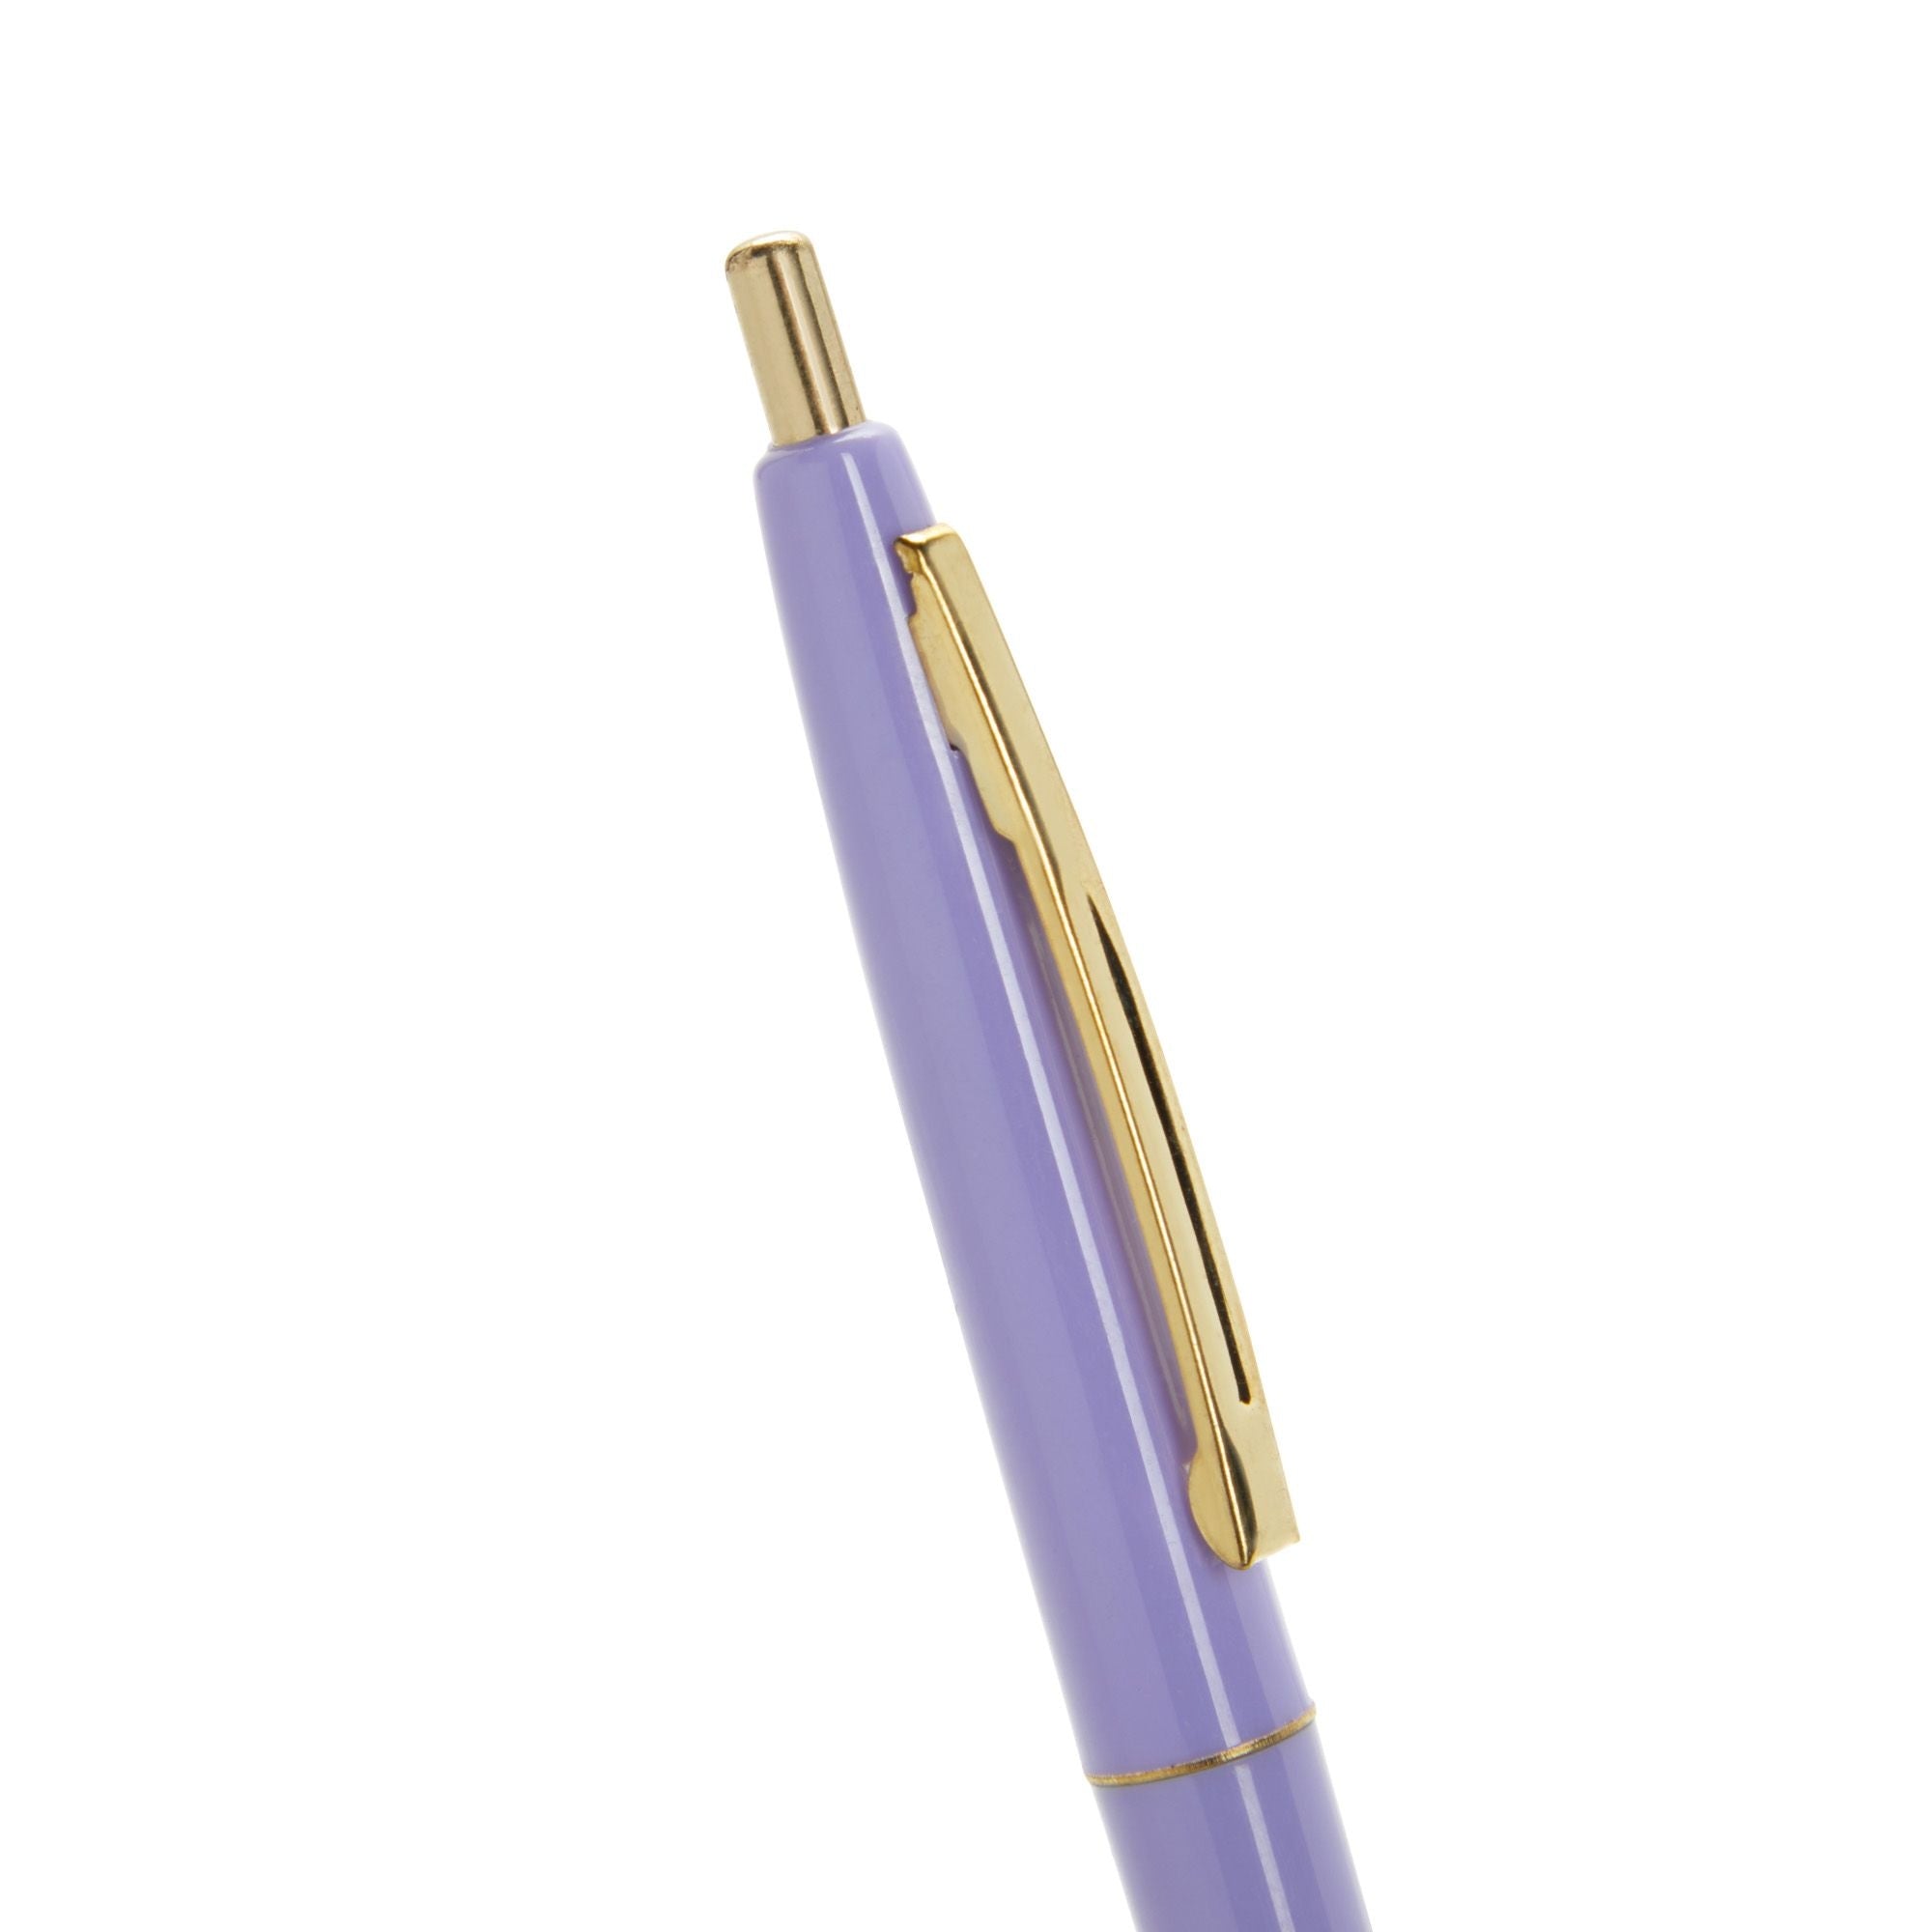 Snarky Ballpoint Pen Sets – Sidebottom Style